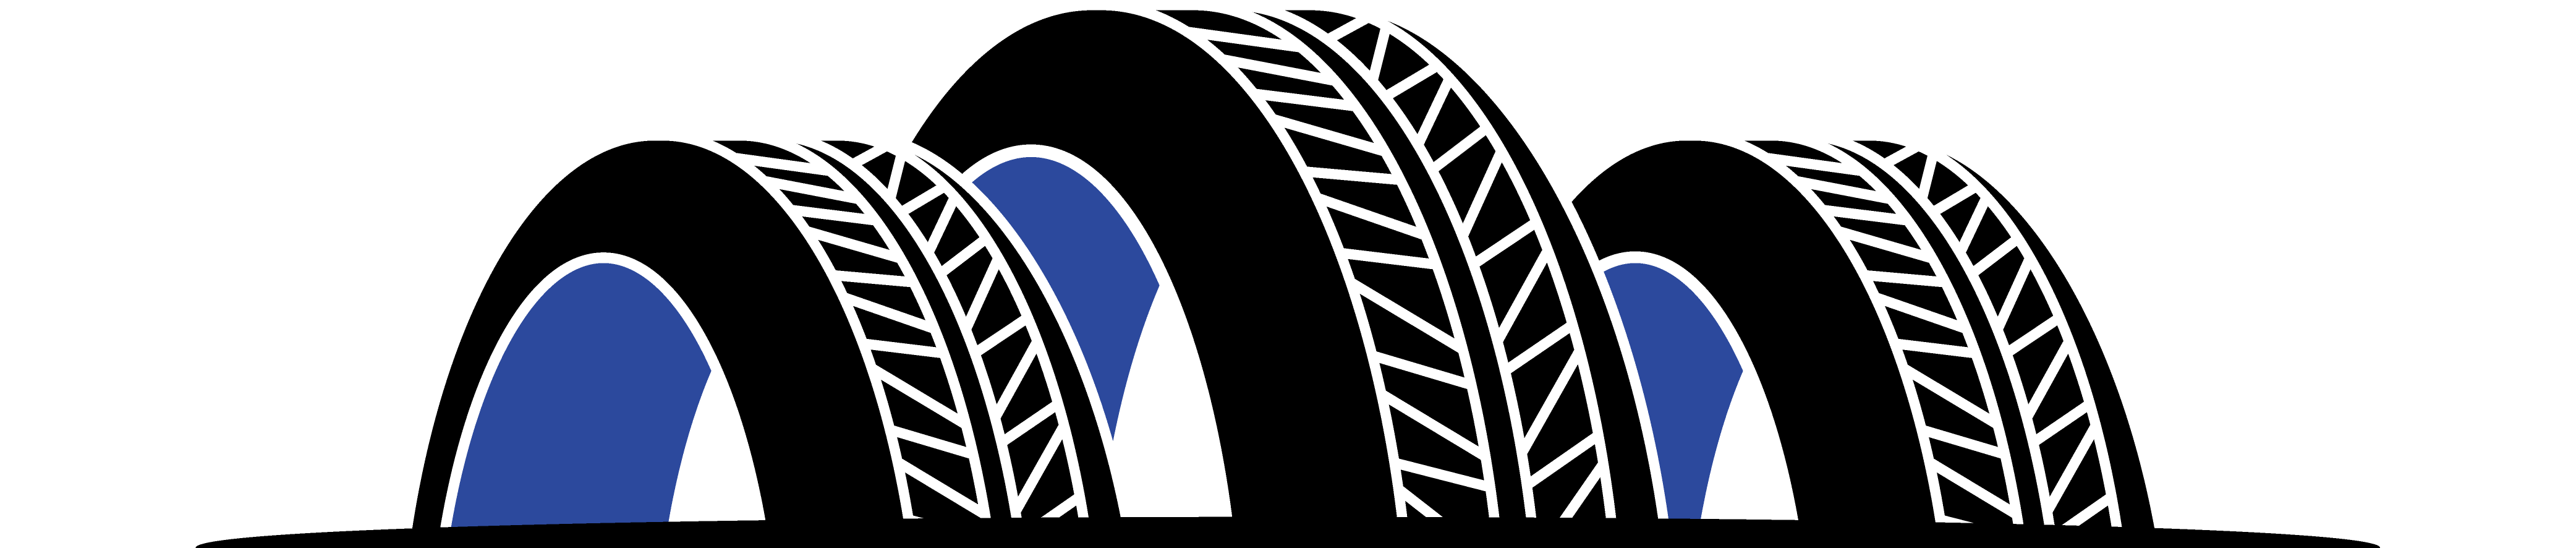 Roadstar Tire Wholesale logo